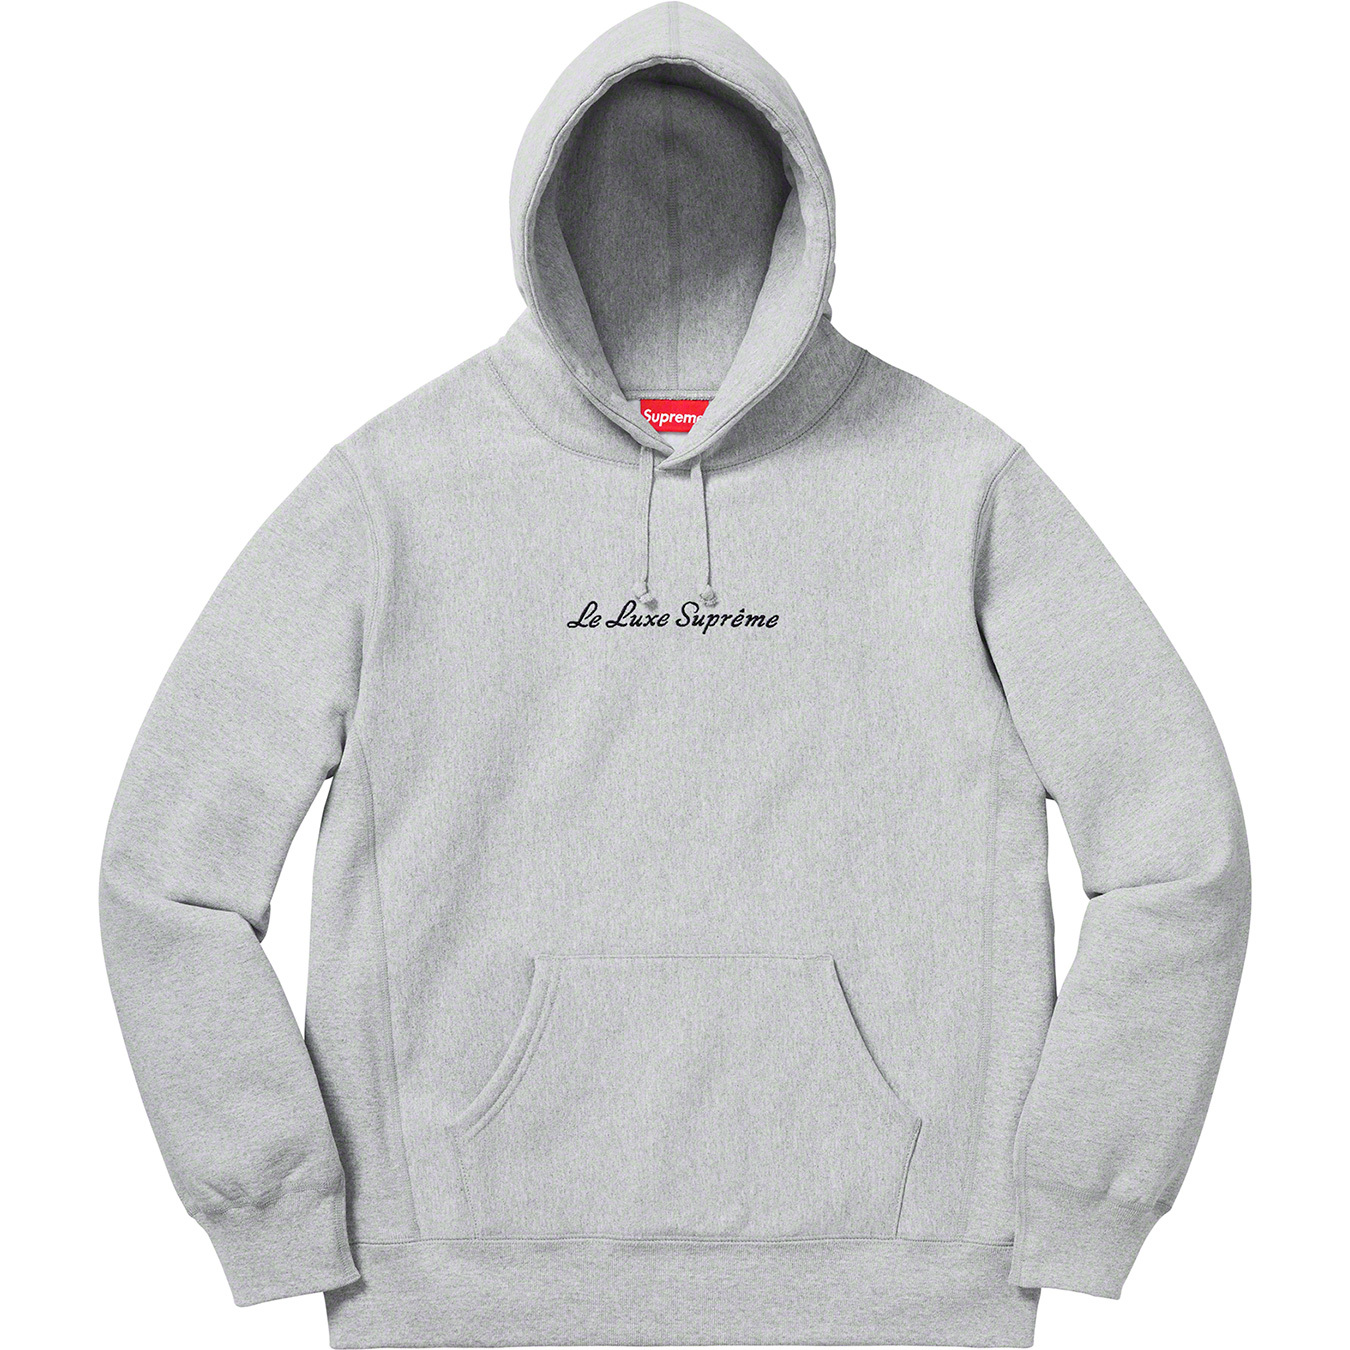 専用　Supreme Le Luxe Hooded Sweatshirt  M